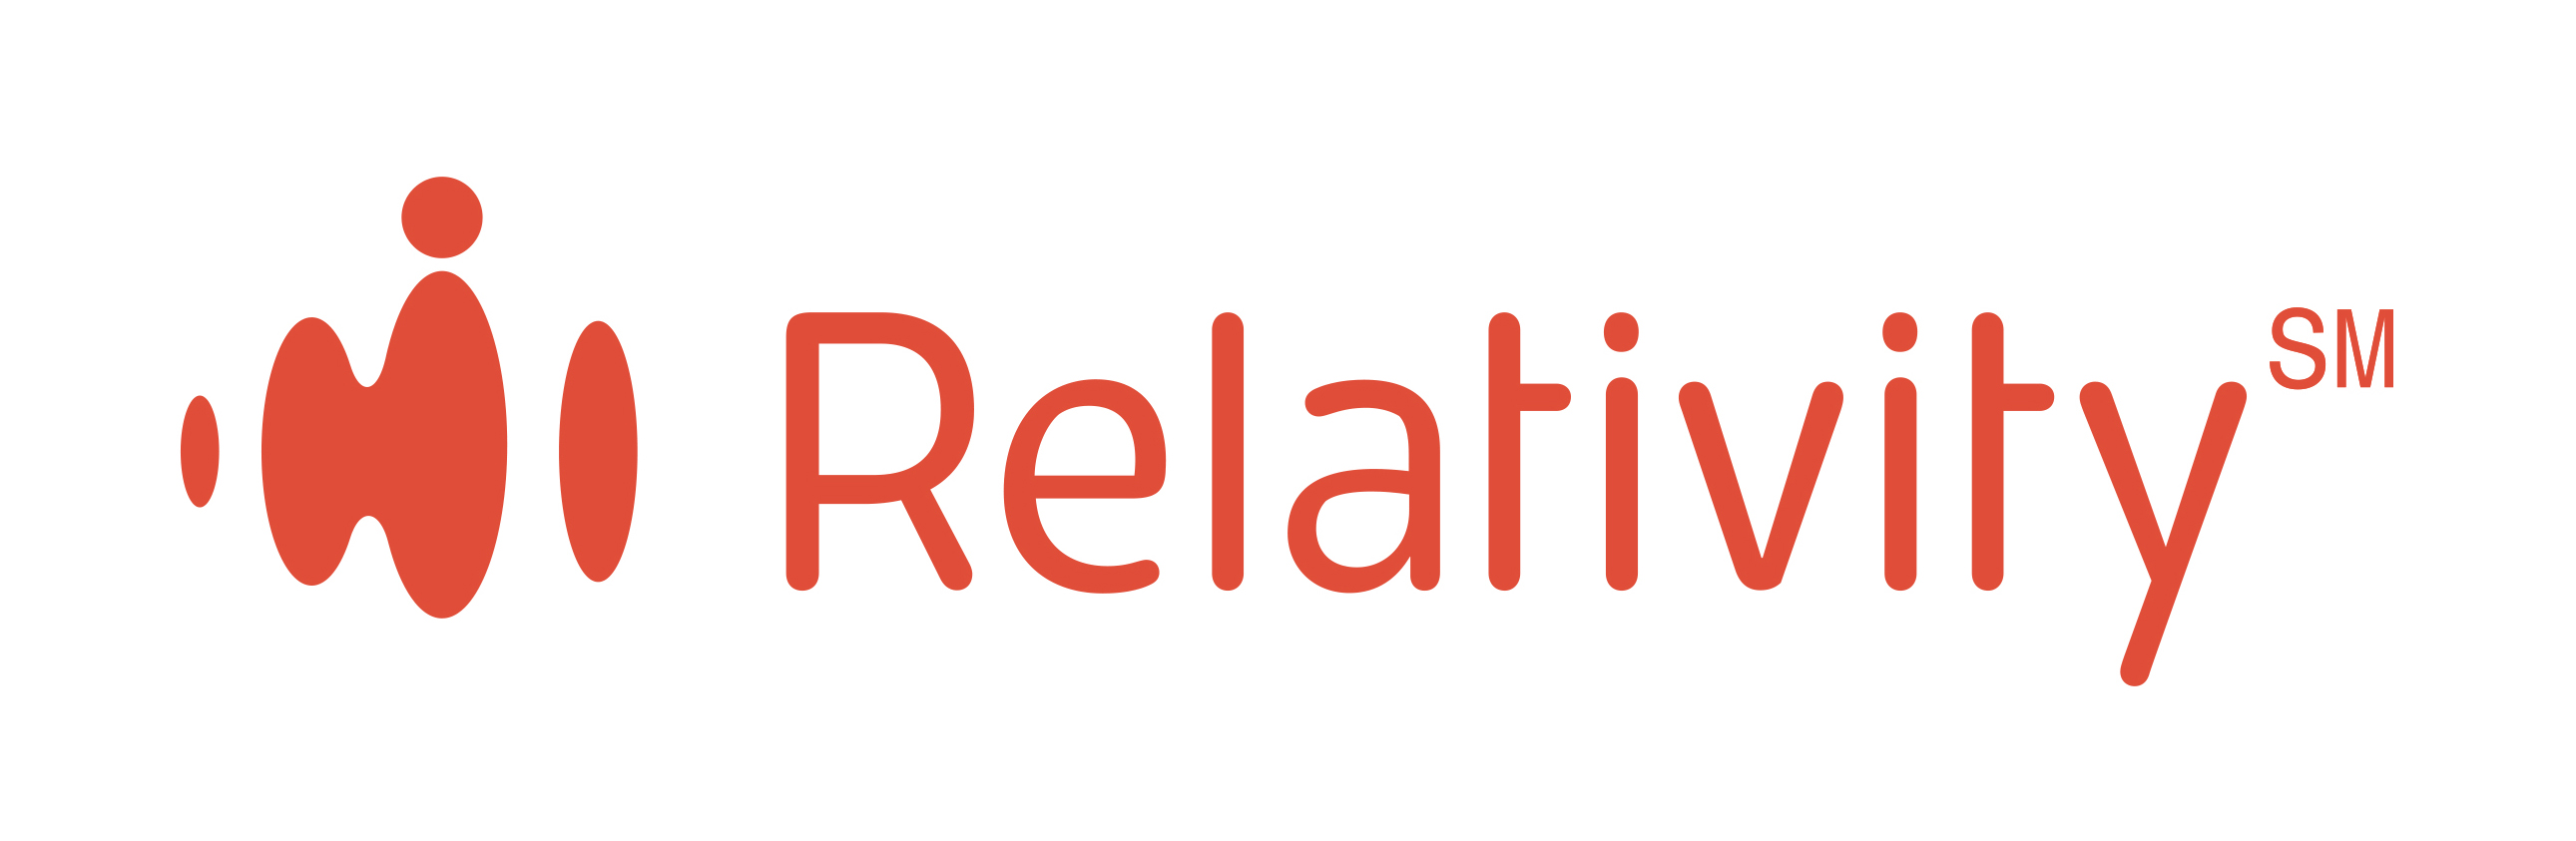 relativity program logo